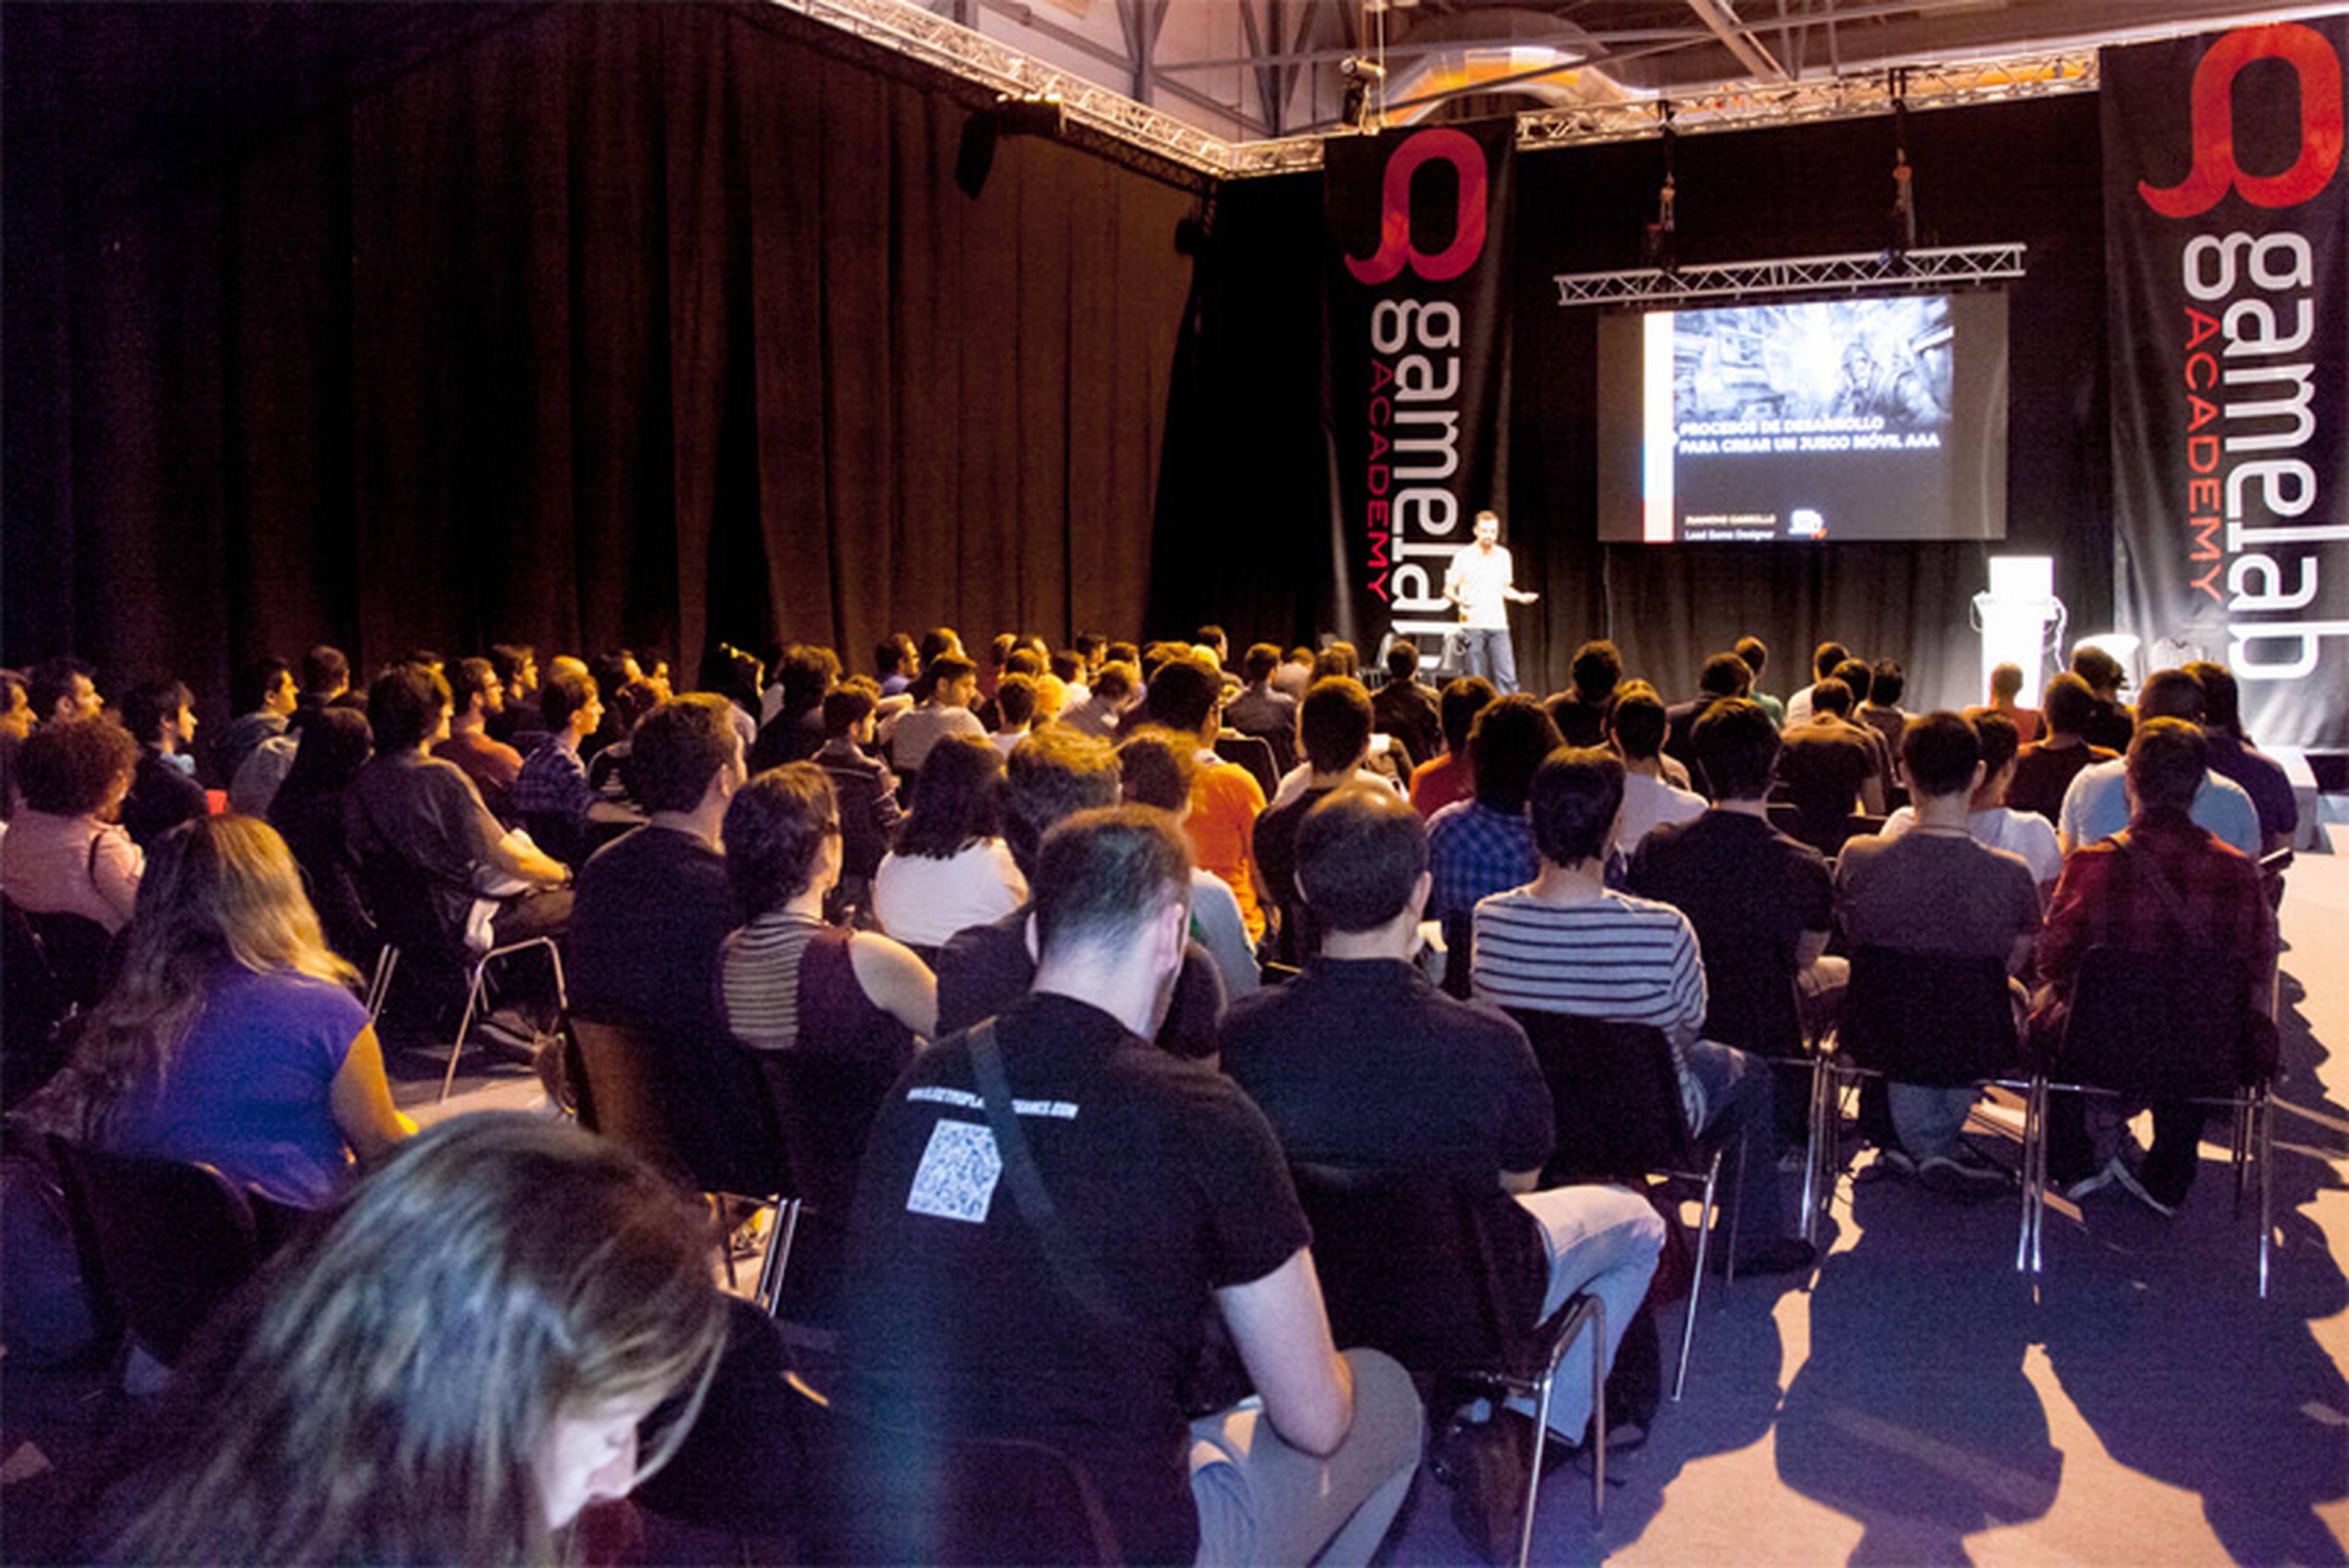 Gamelab mantuvo un interesante cliclo de conferencias durante toda la Madrid Games Week